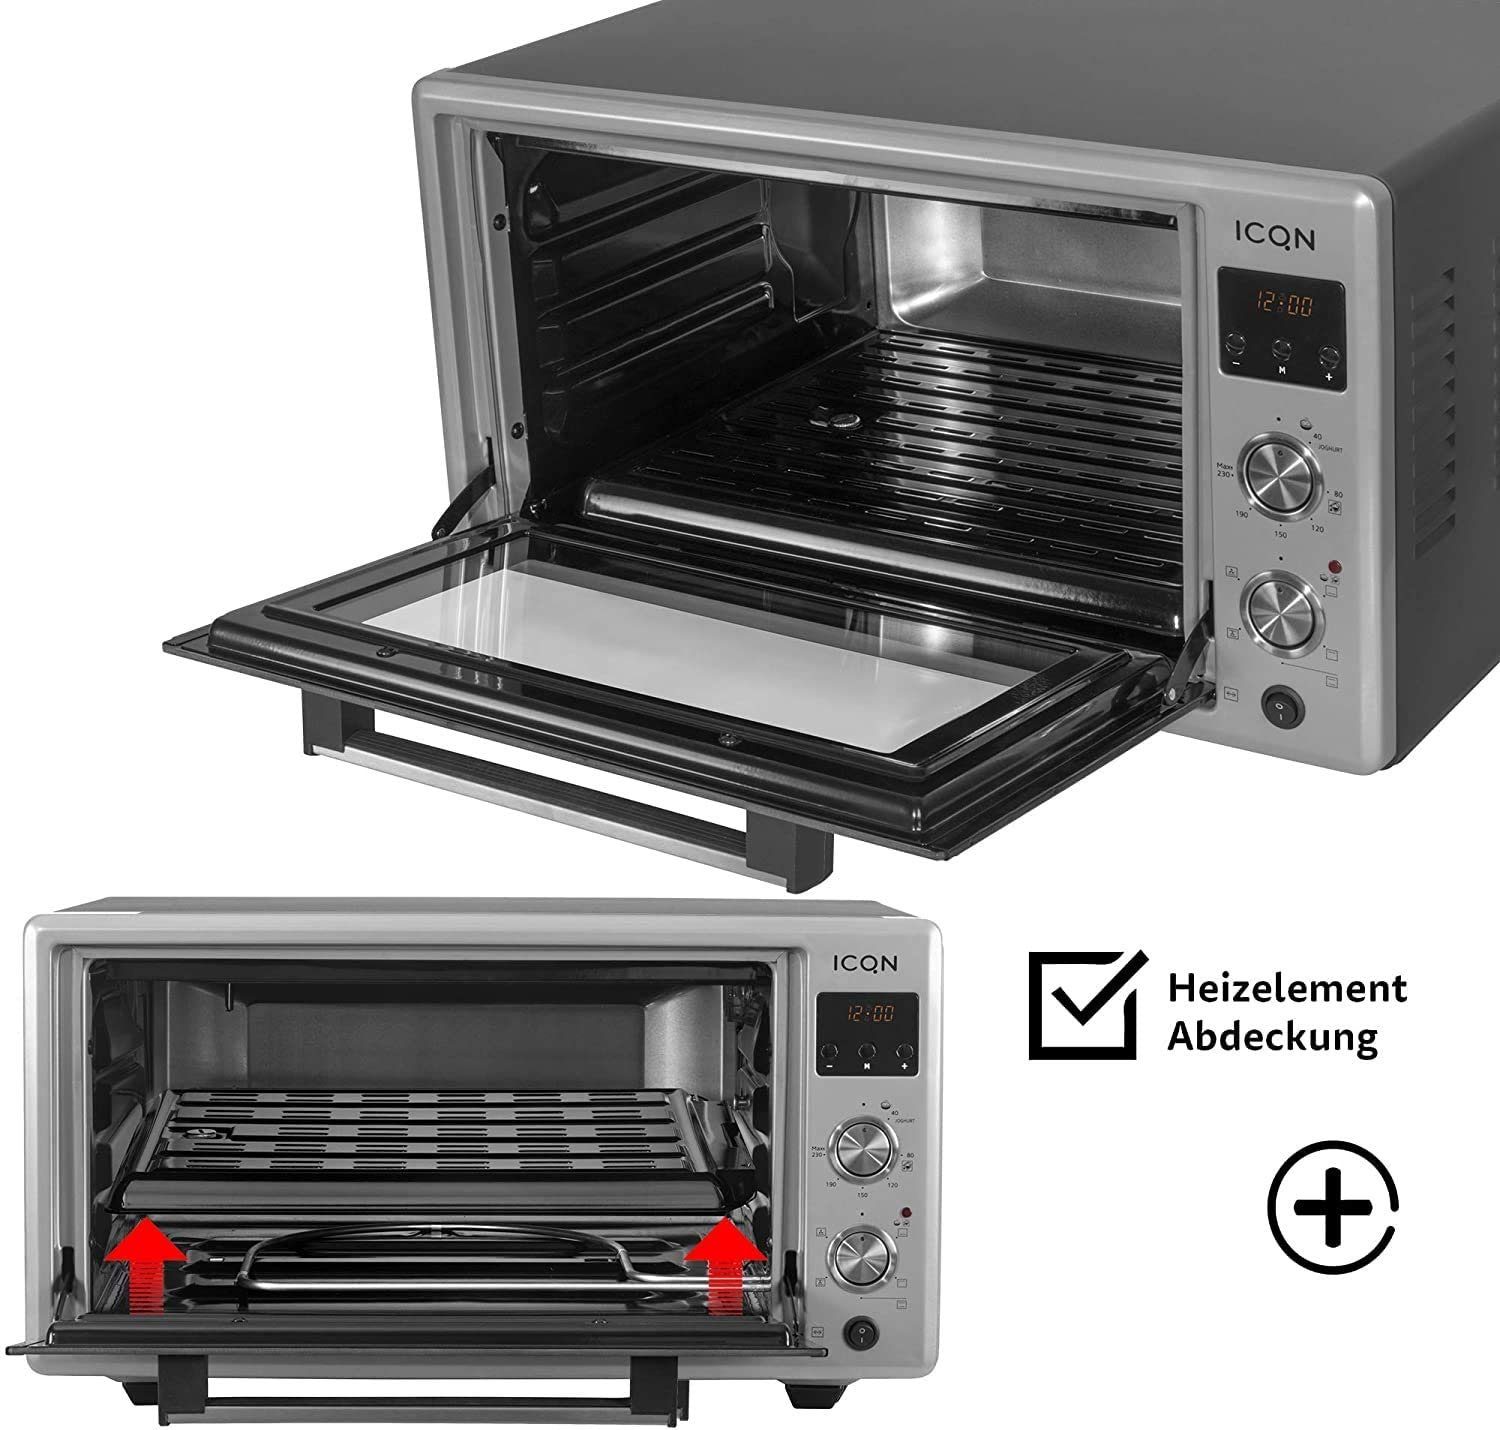 ICQN Minibackofen DIGITAL 50 Pizza-Ofen, inkl. Doppelverglasung, Black W, Emailliert 40°-230°C, Liter, LED-Anzeige, Backblech Drehspieß, 1400 Set, Popup-Knöpfe